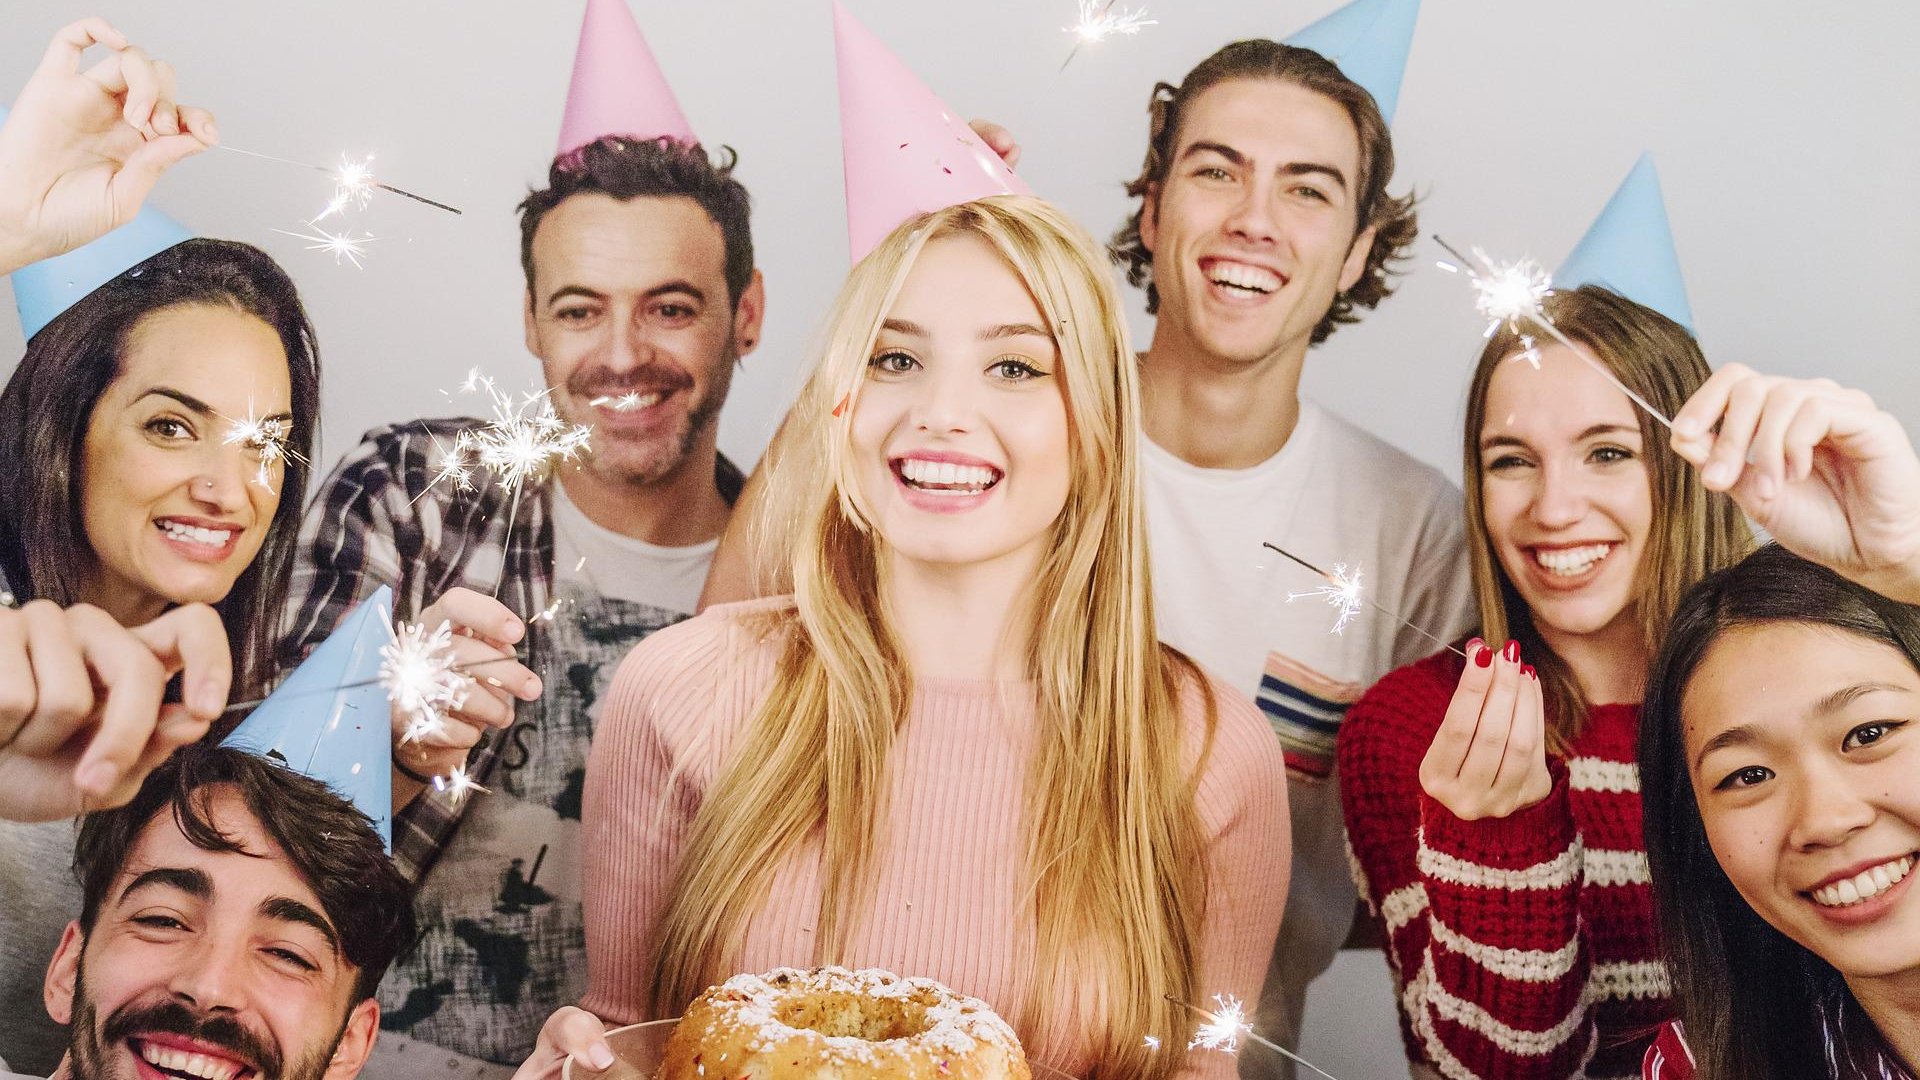 Seis pessoas estão comemorando um aniversário com velas, chapéus coloridos e um bolo